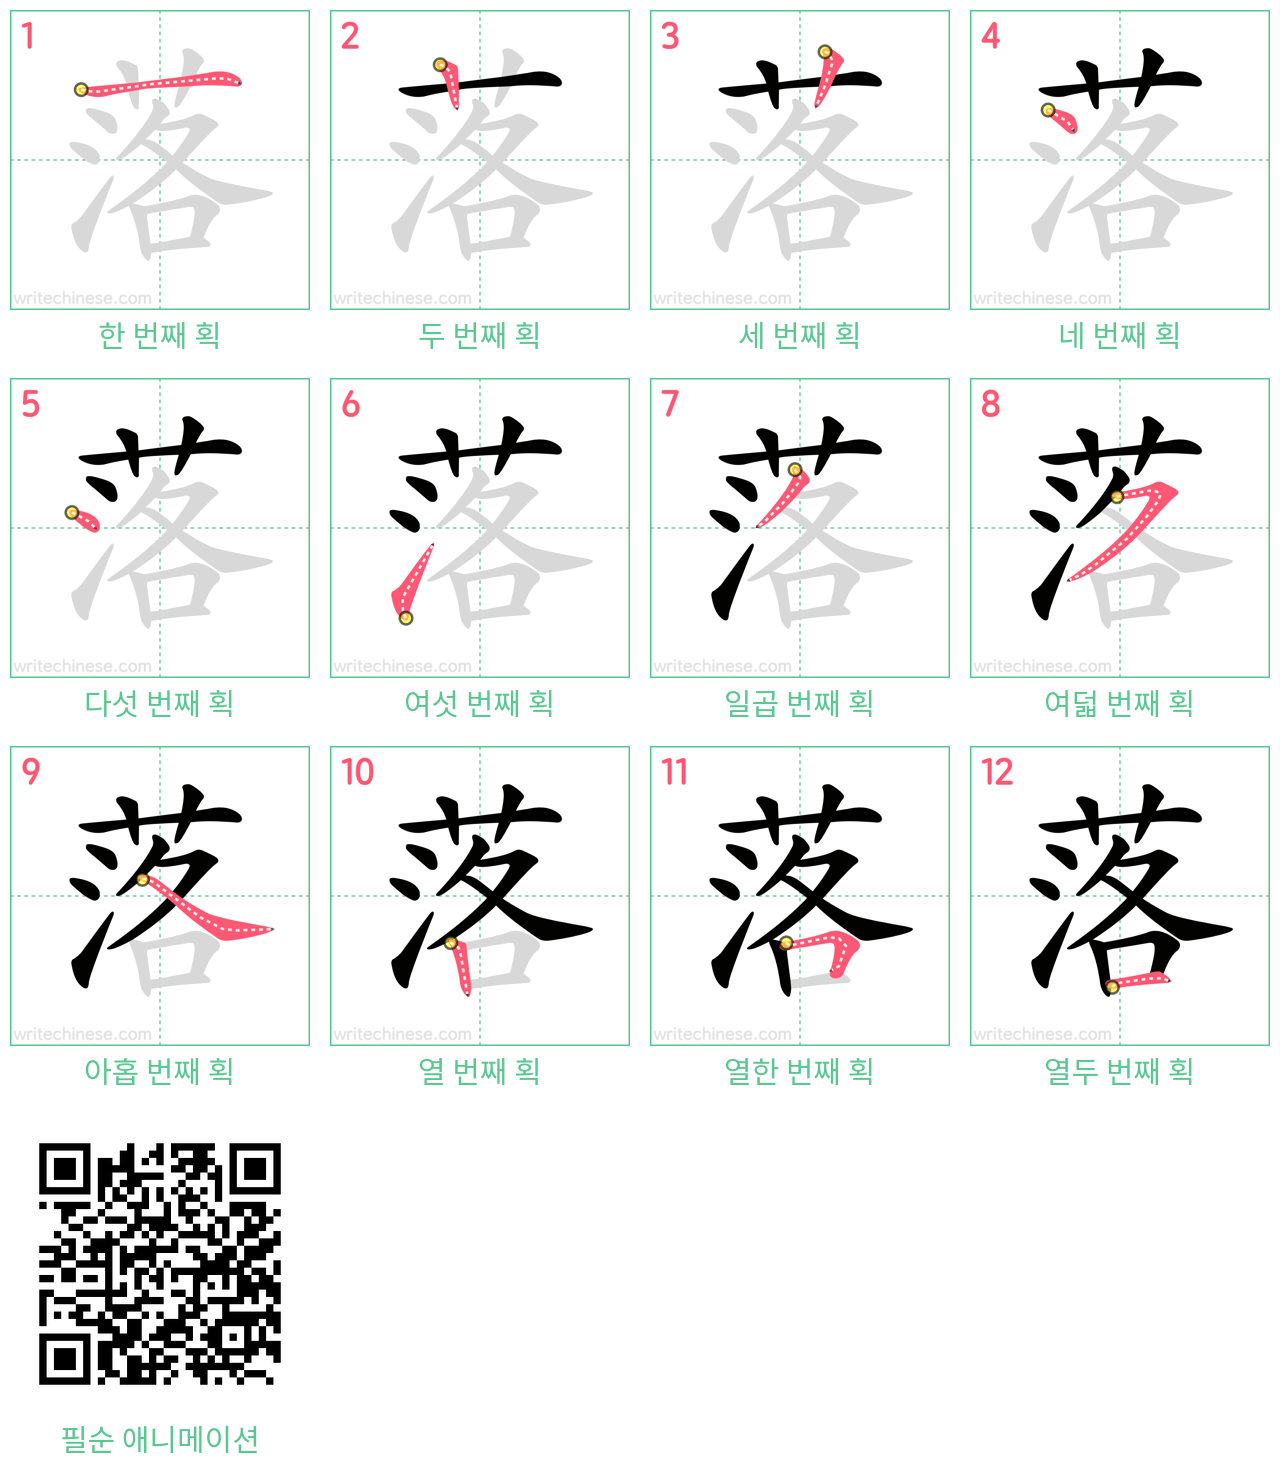 落 step-by-step stroke order diagrams